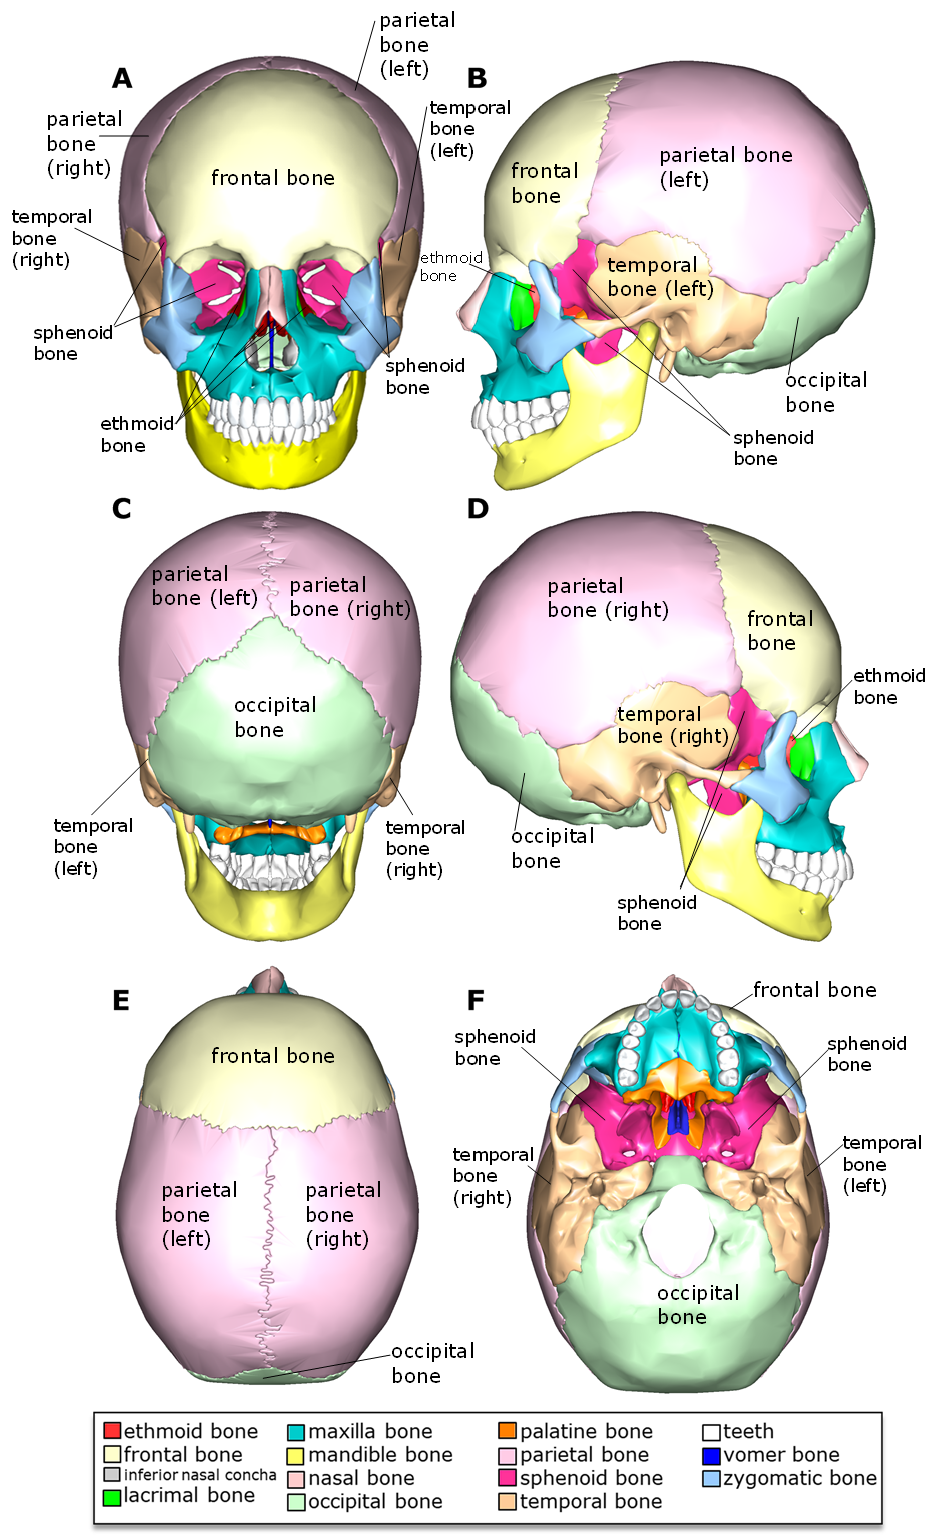 Skull diagram with bones of the cranium labeled.